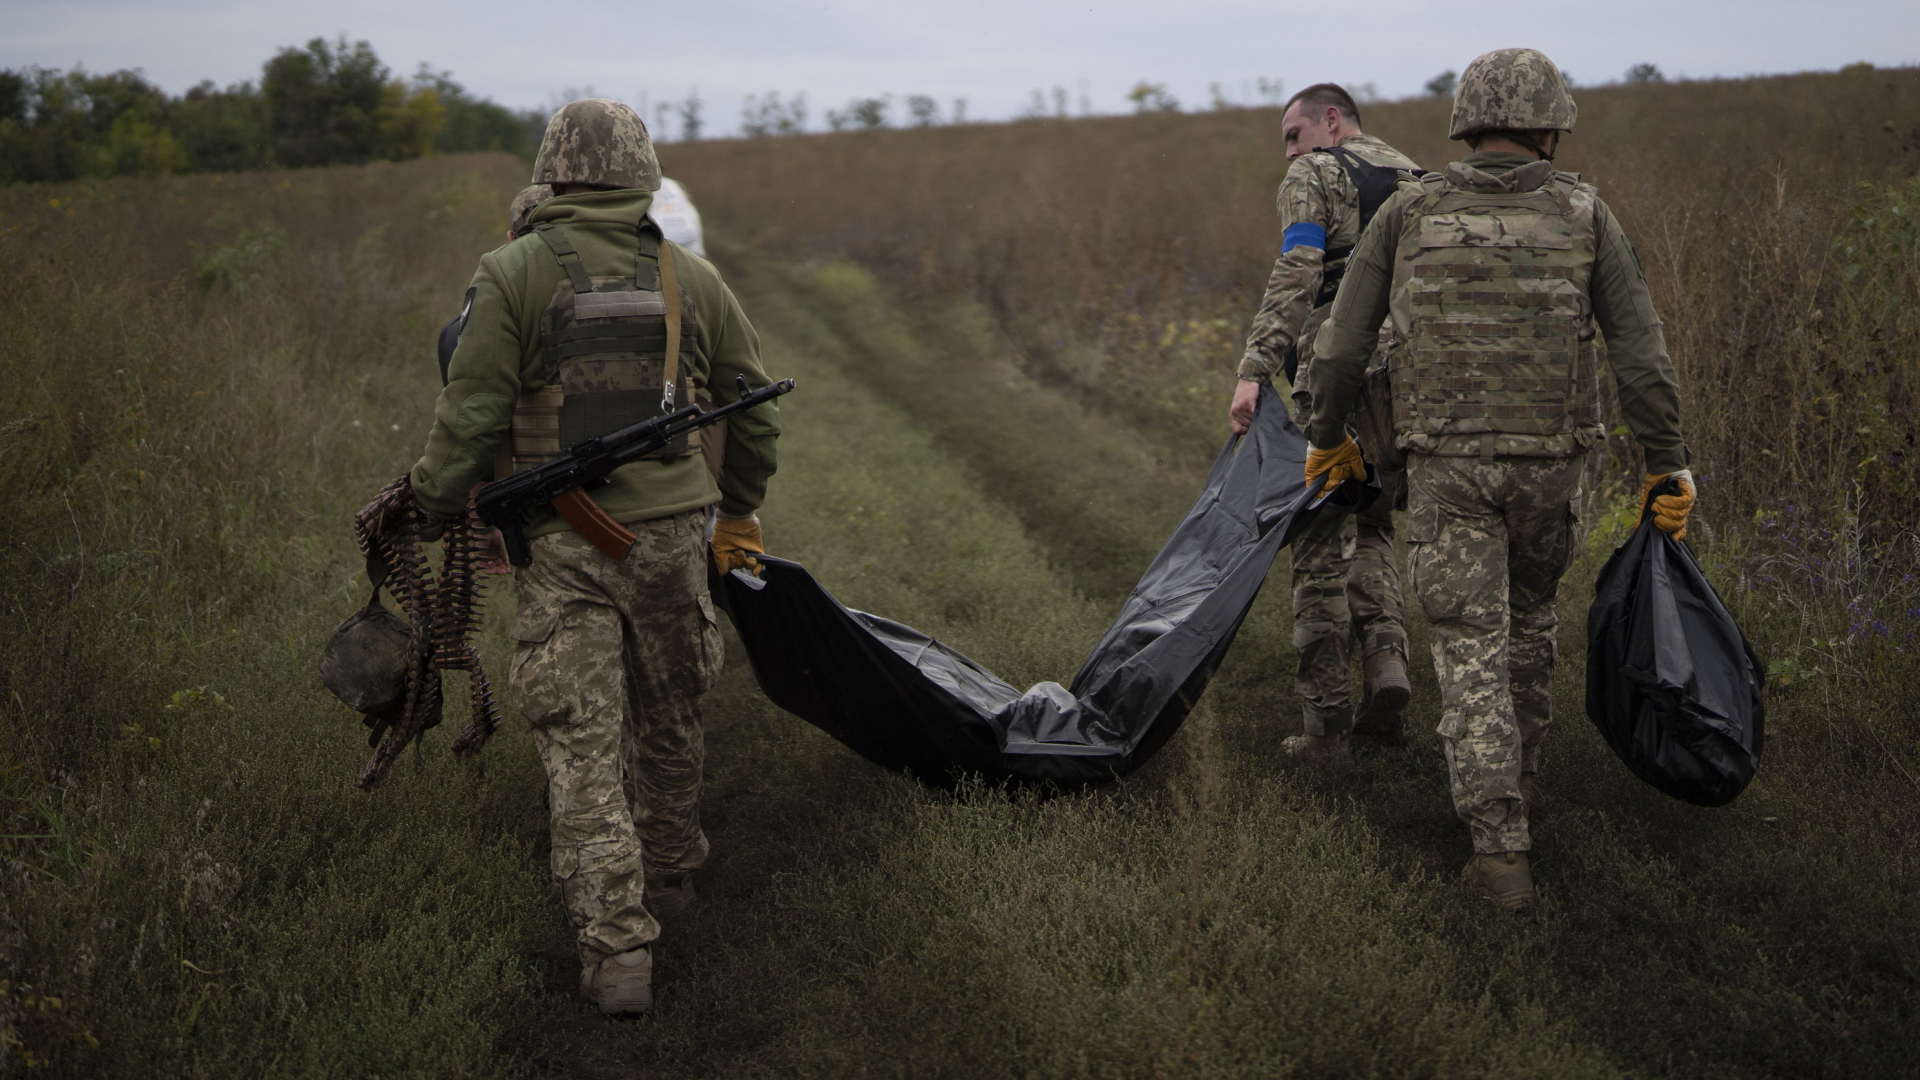 Krieg gegen die Ukraine: Angaben zu Verlusten “gänzlich unglaubwürdig”